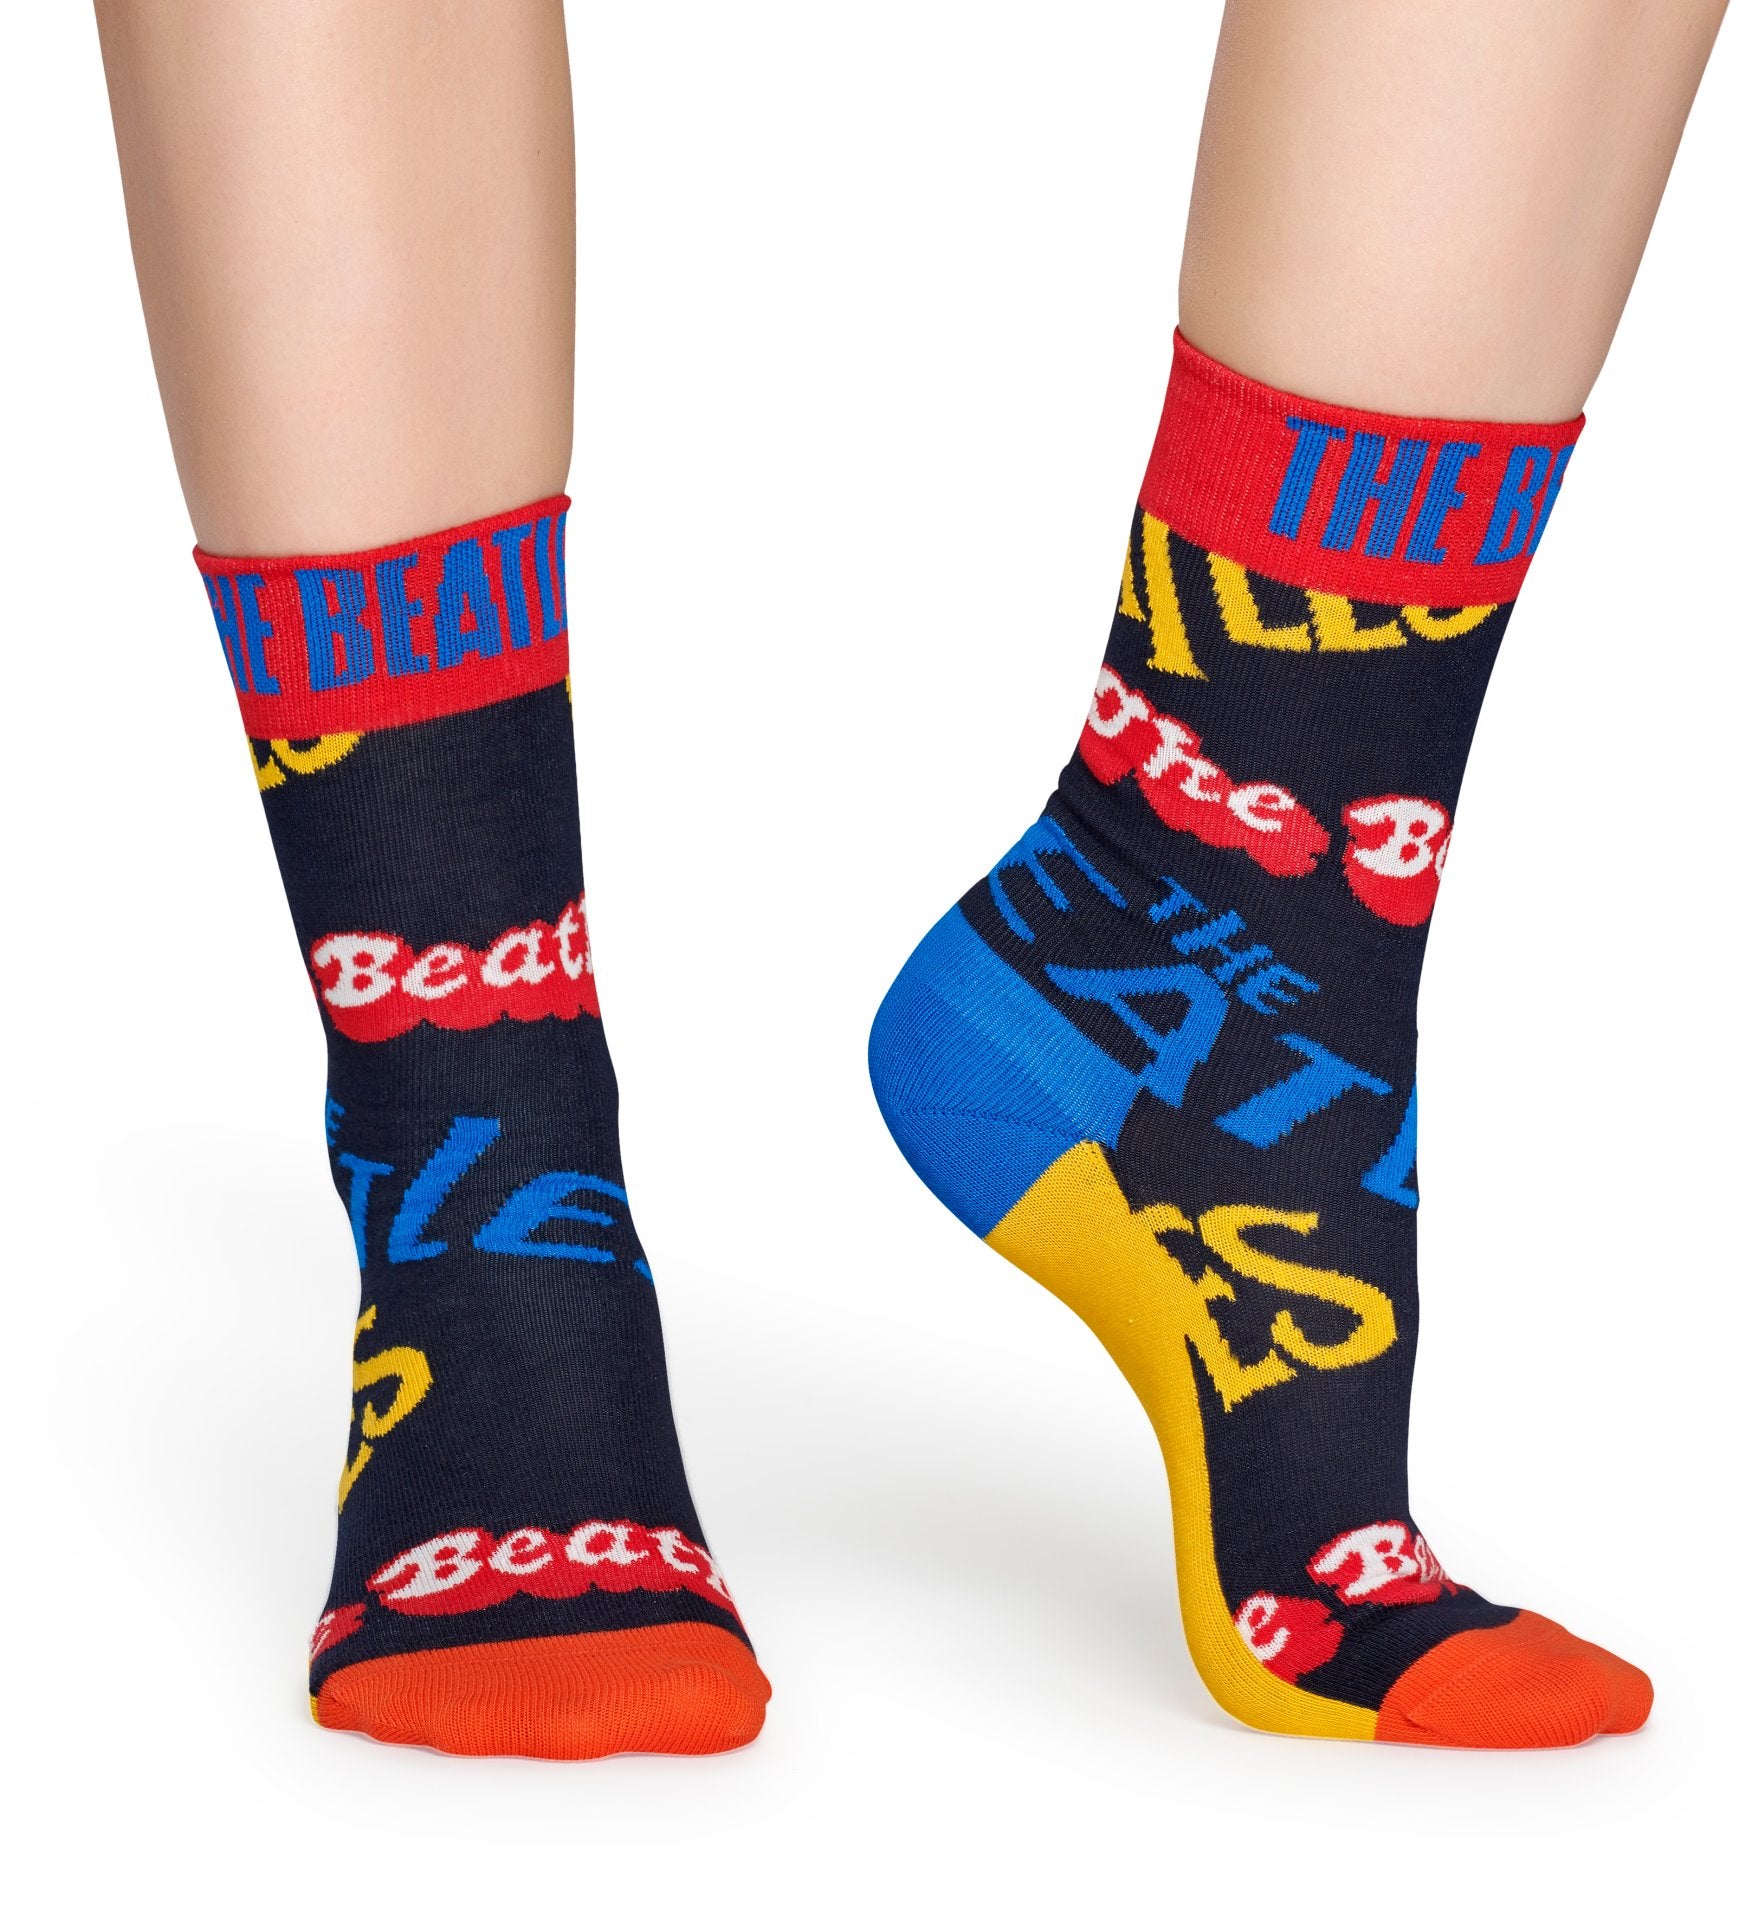 Modré ponožky s nápisy Beatles z kolekce Happy Socks x Beatles, vzor In The Name Of